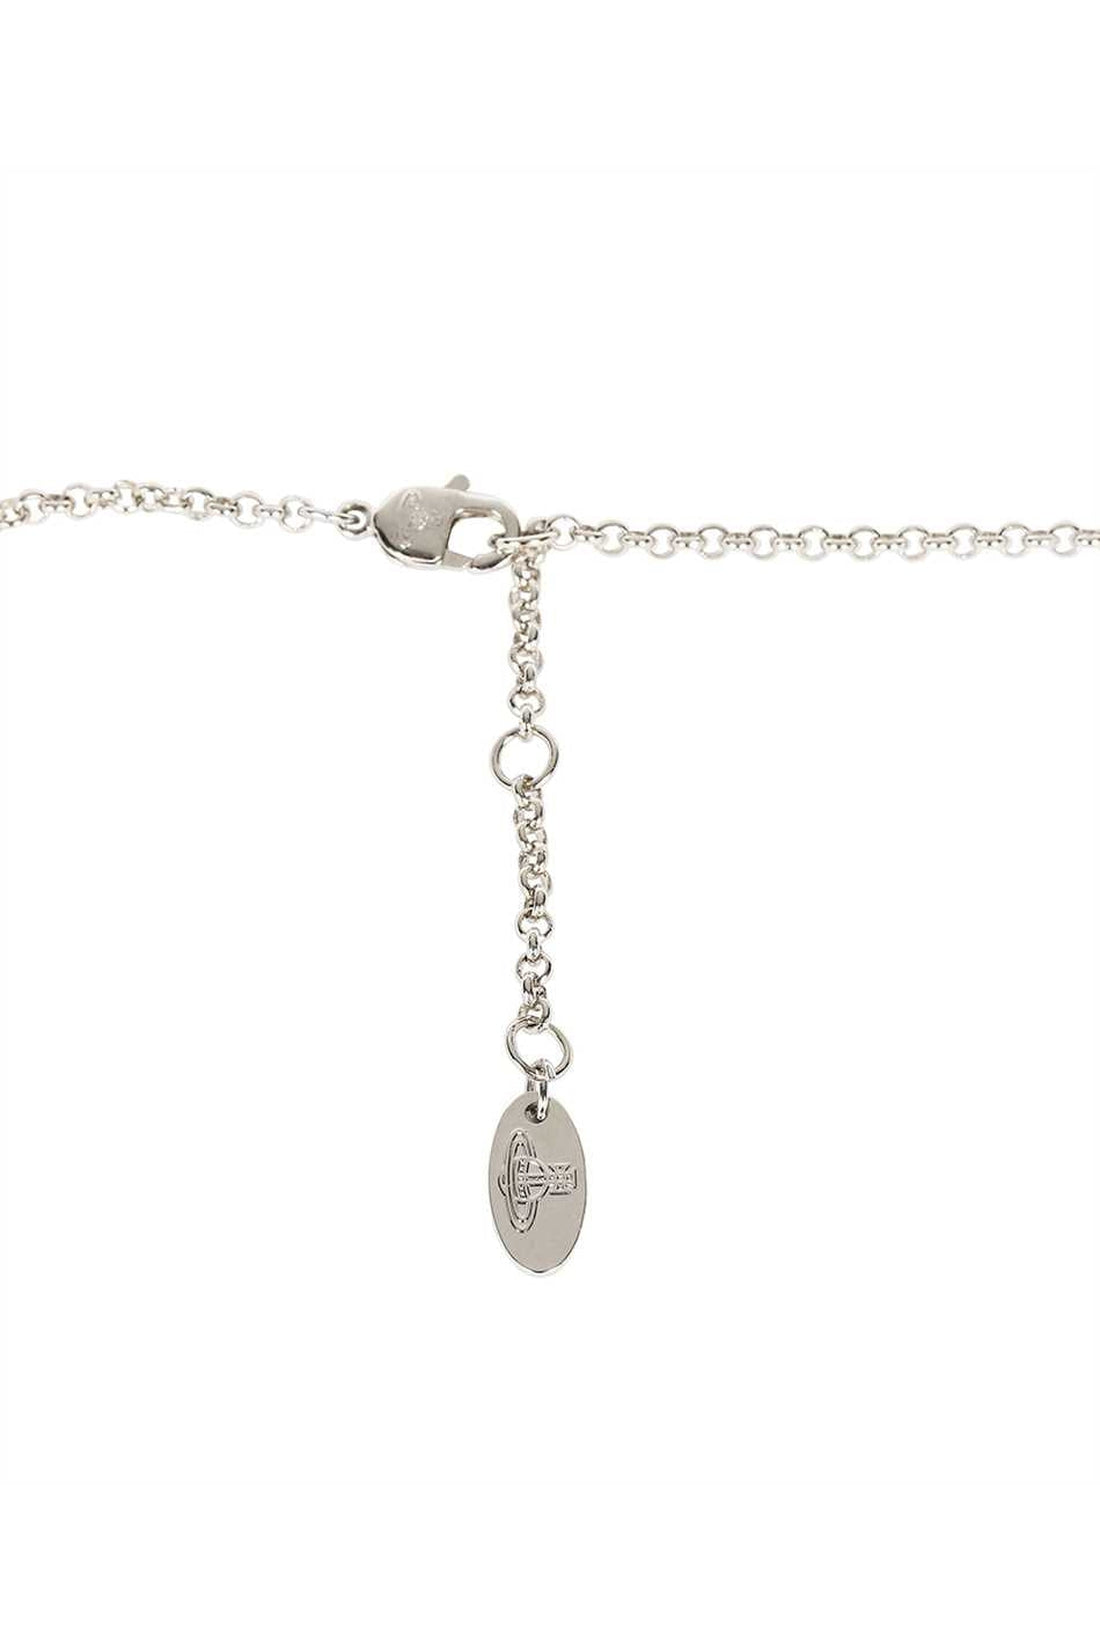 Vivienne Westwood-OUTLET-SALE-Decorative pendant necklace-ARCHIVIST